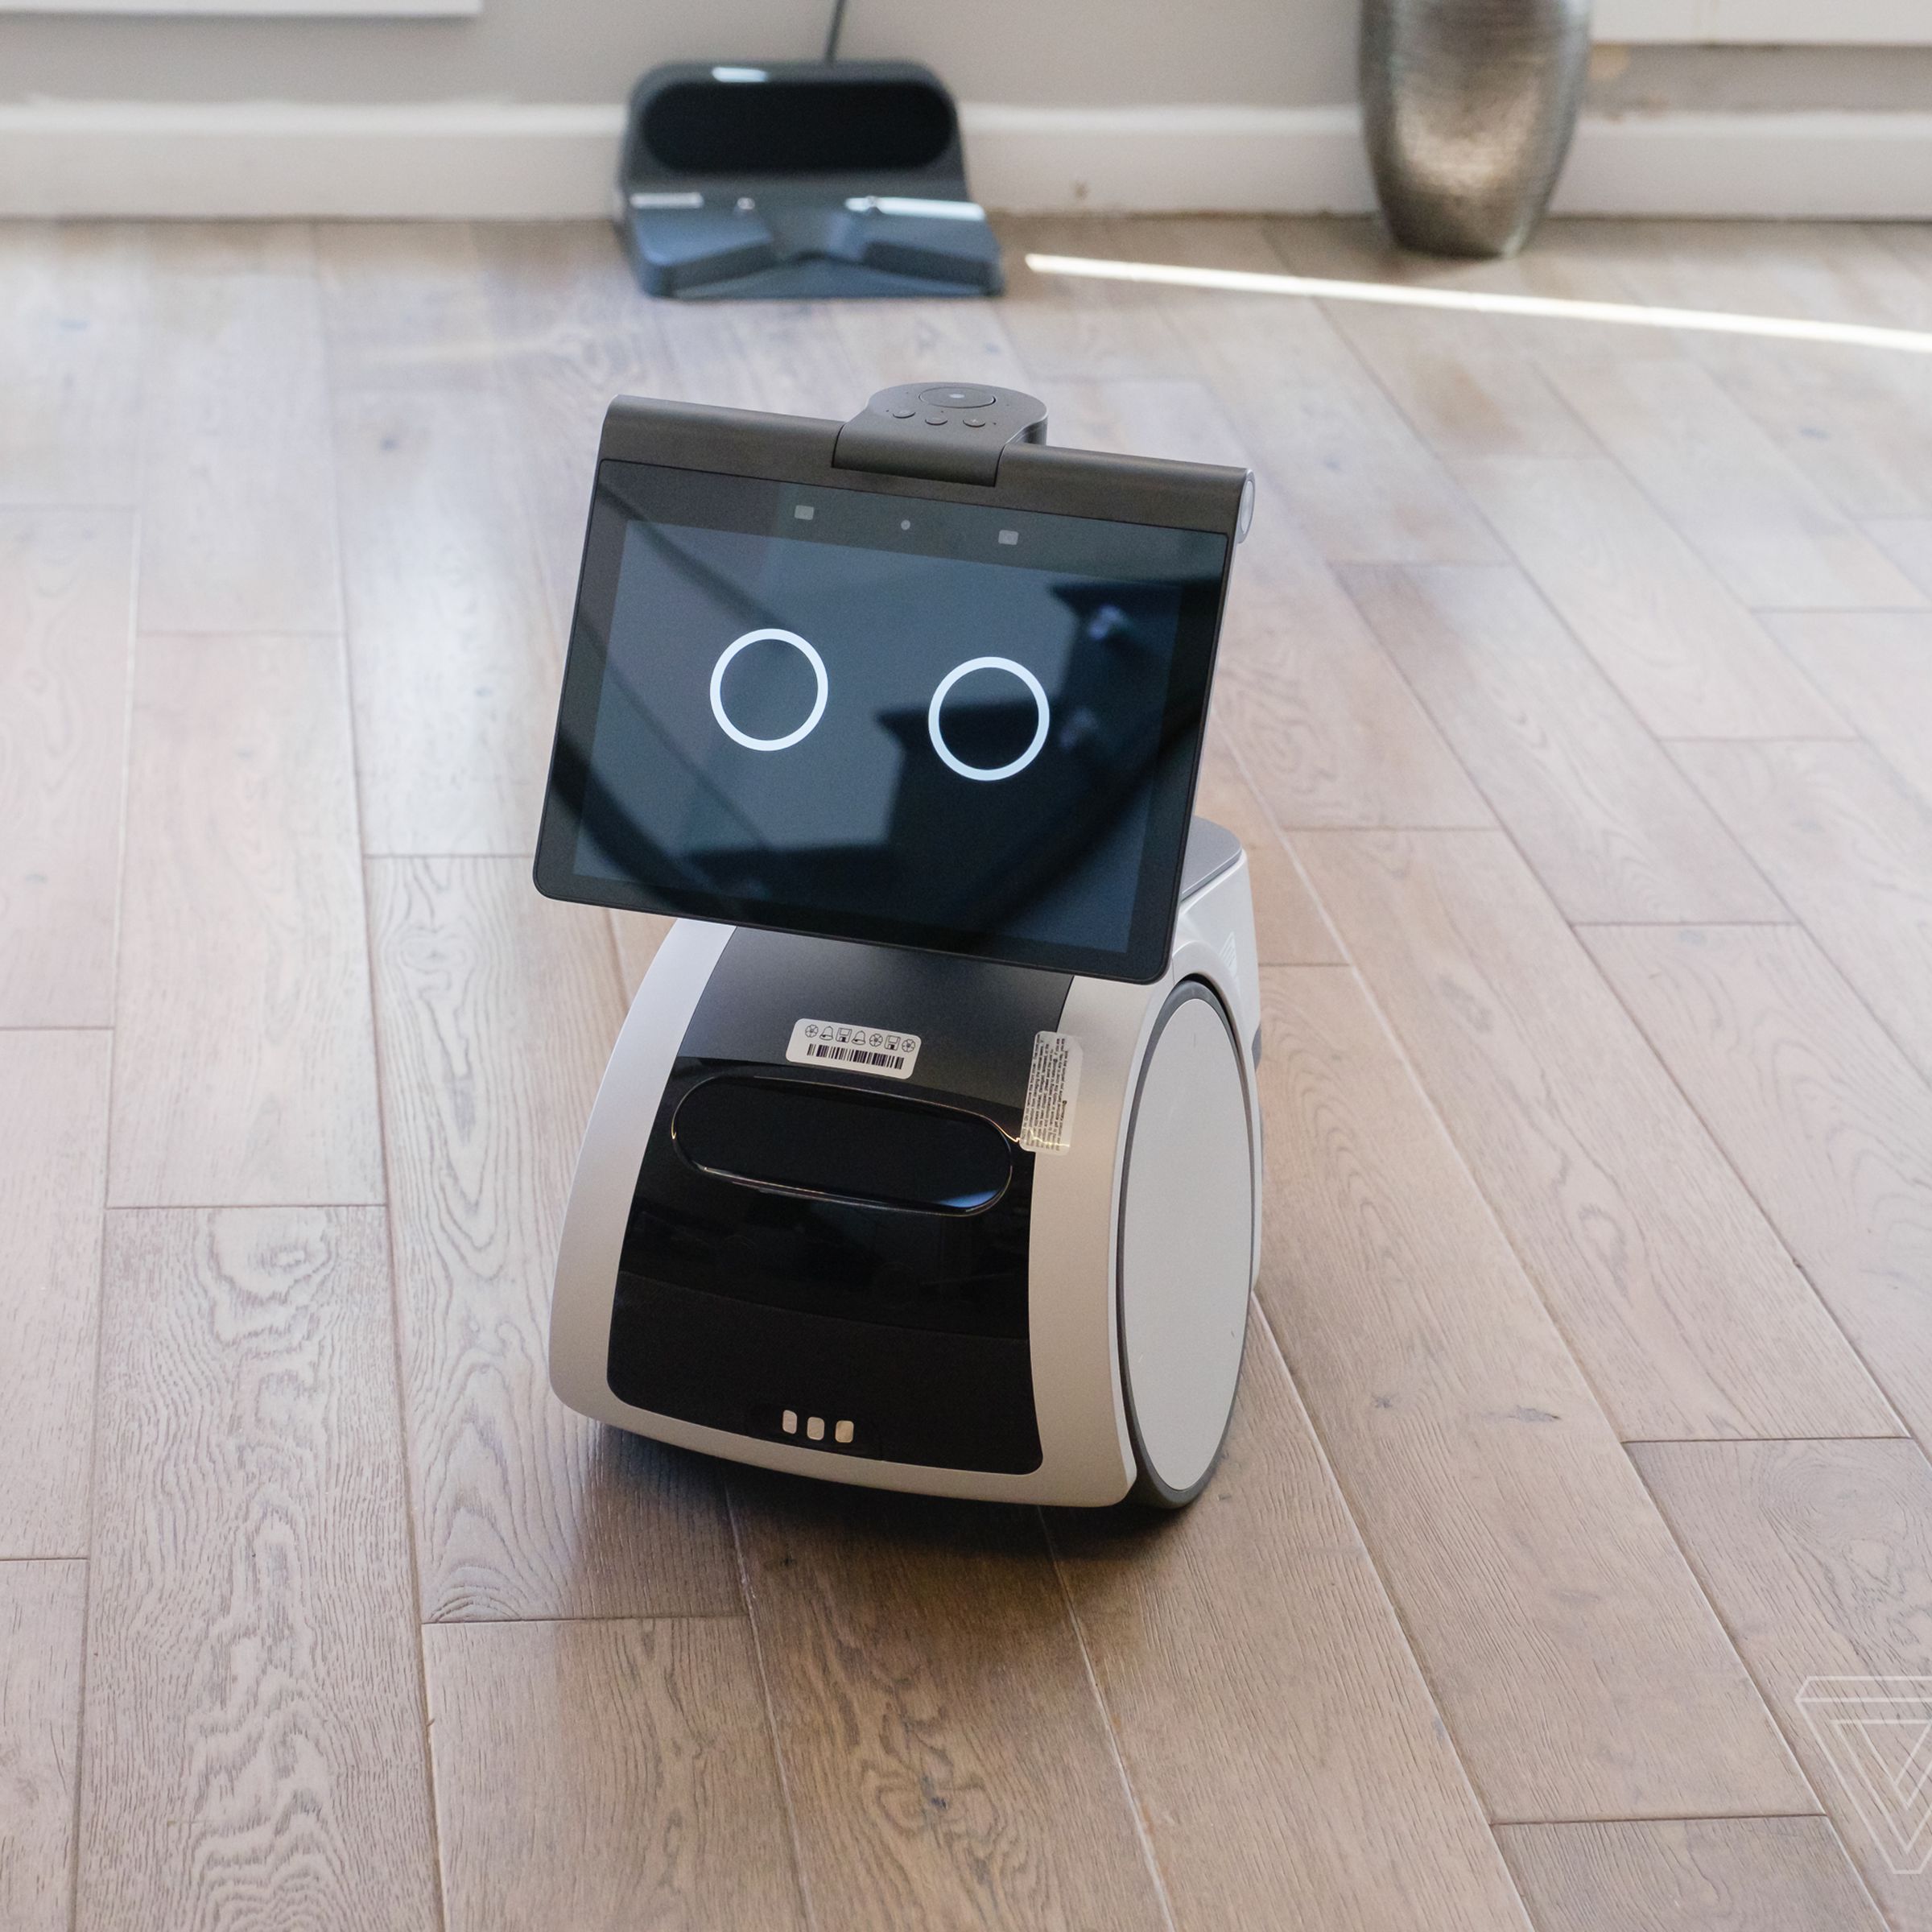 Amazon’s Astro home robot